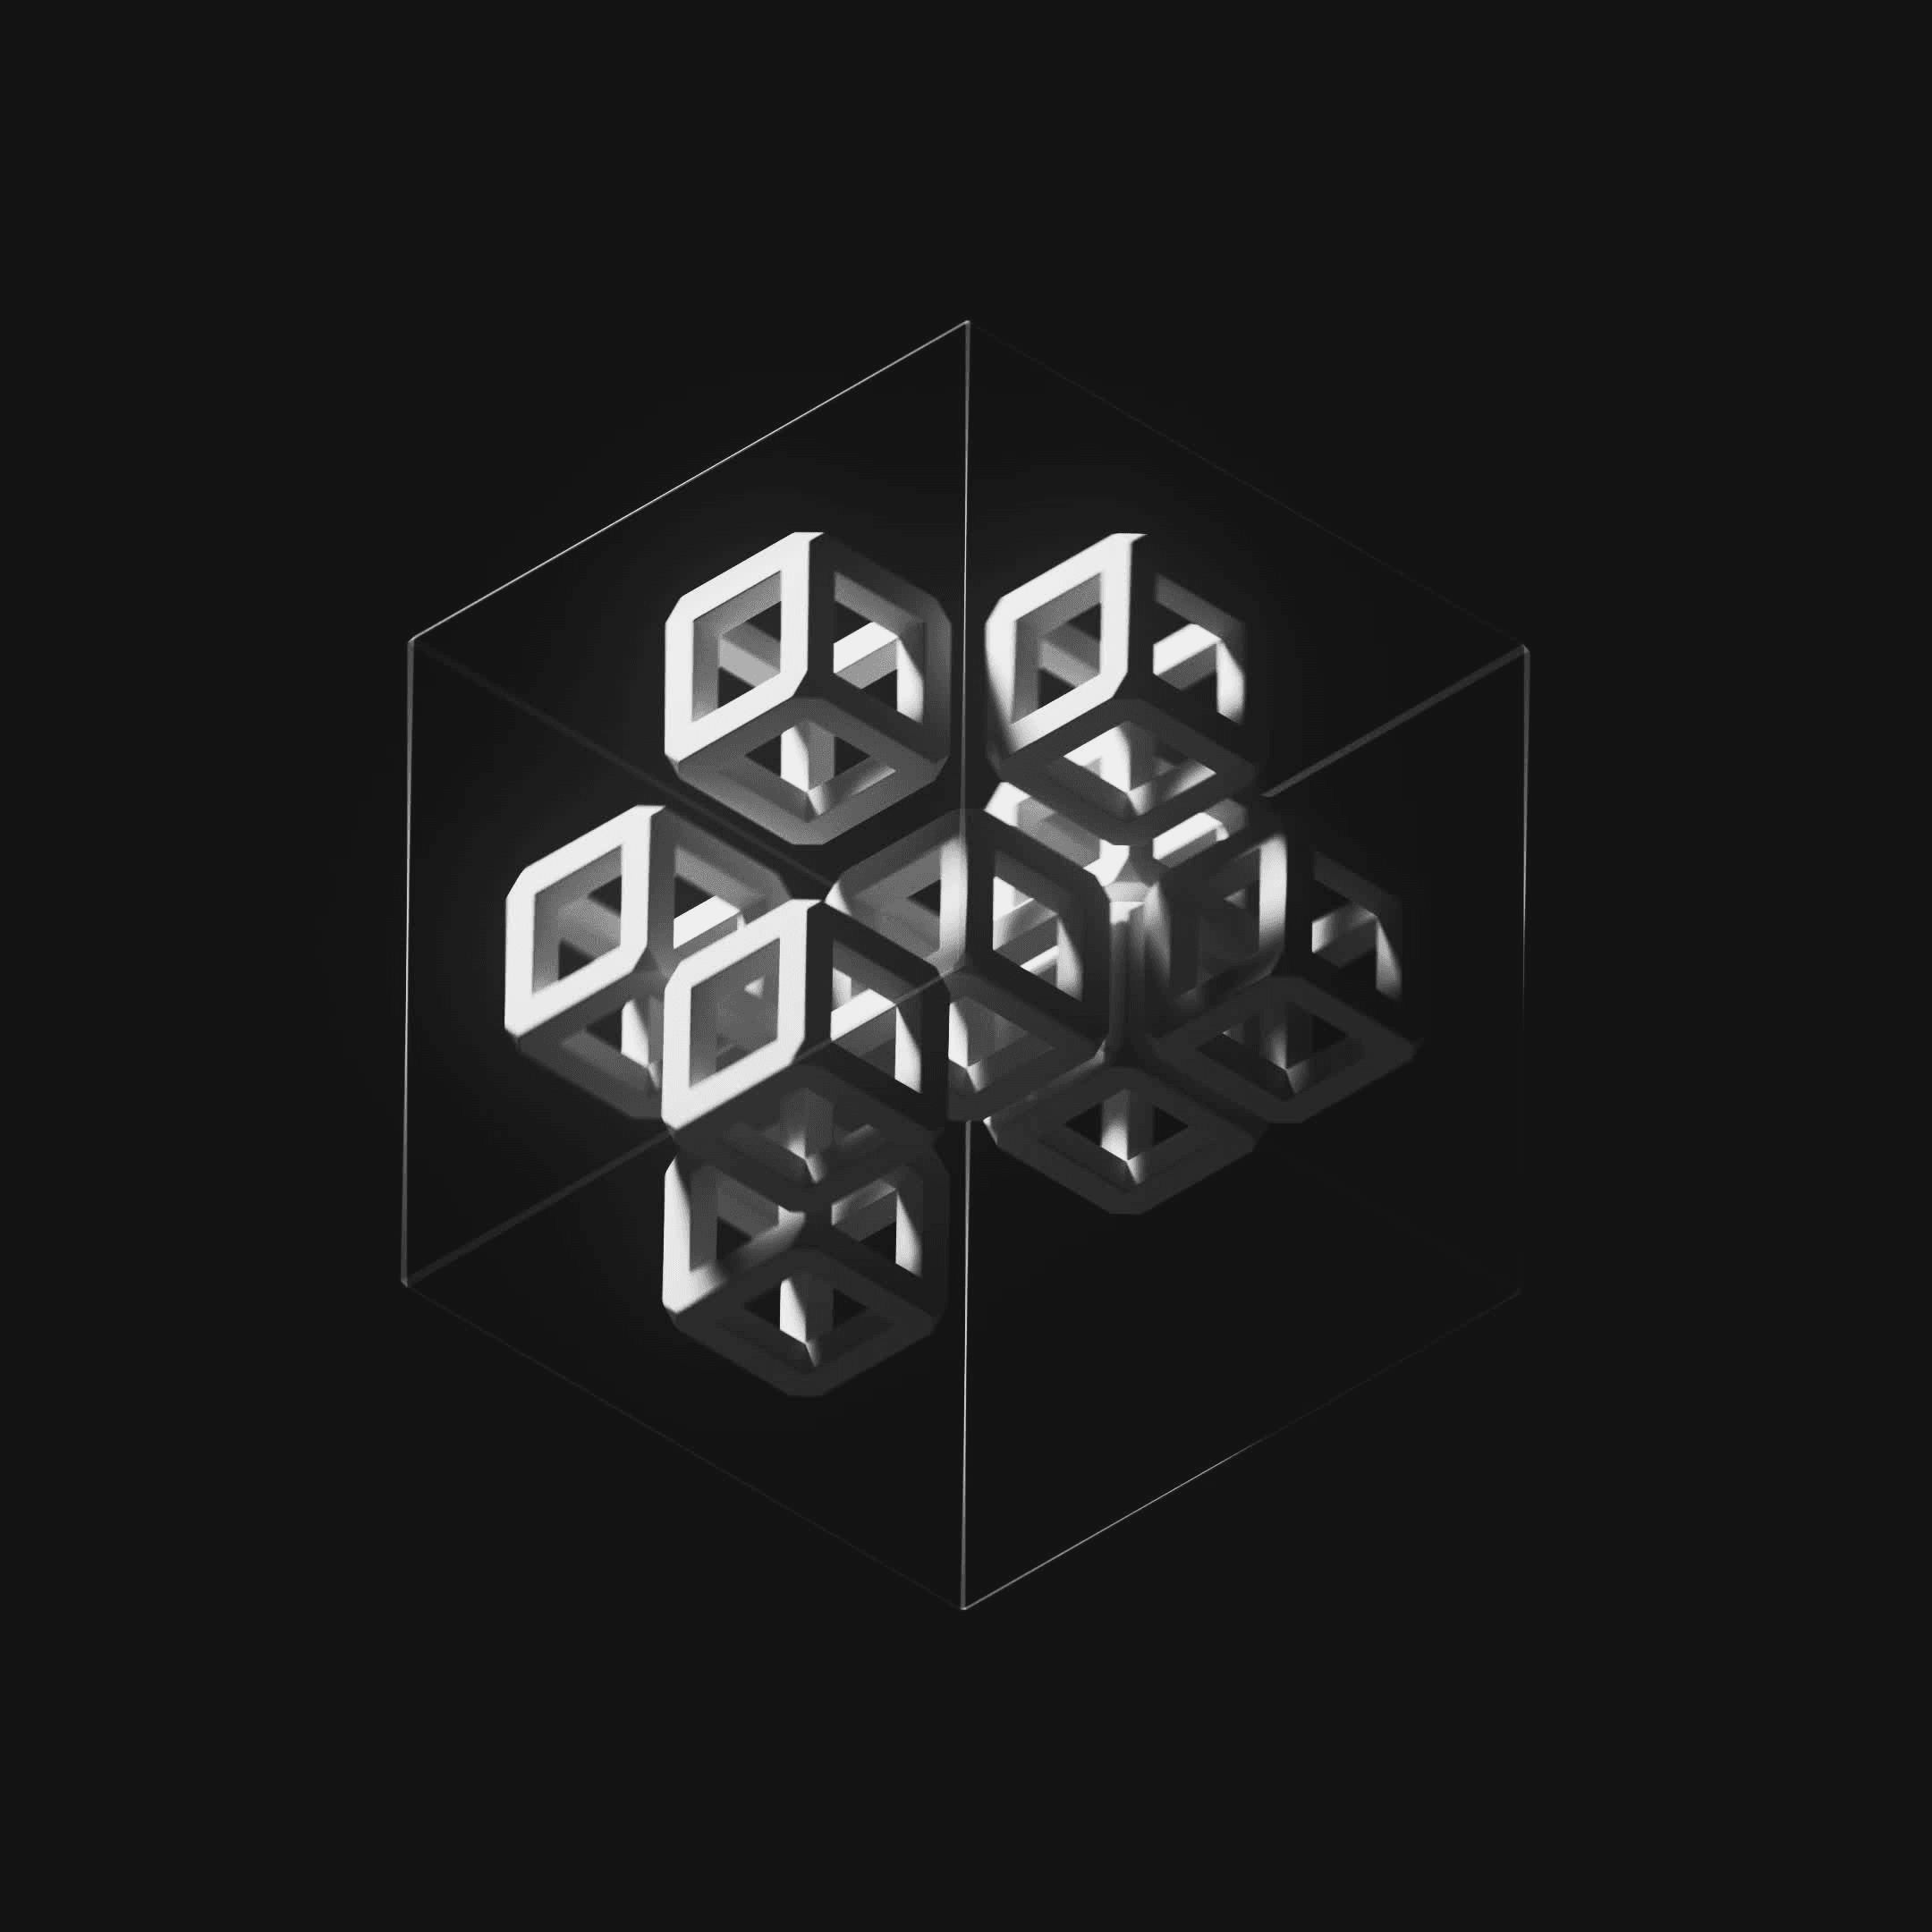 Ten Cubes #229/247